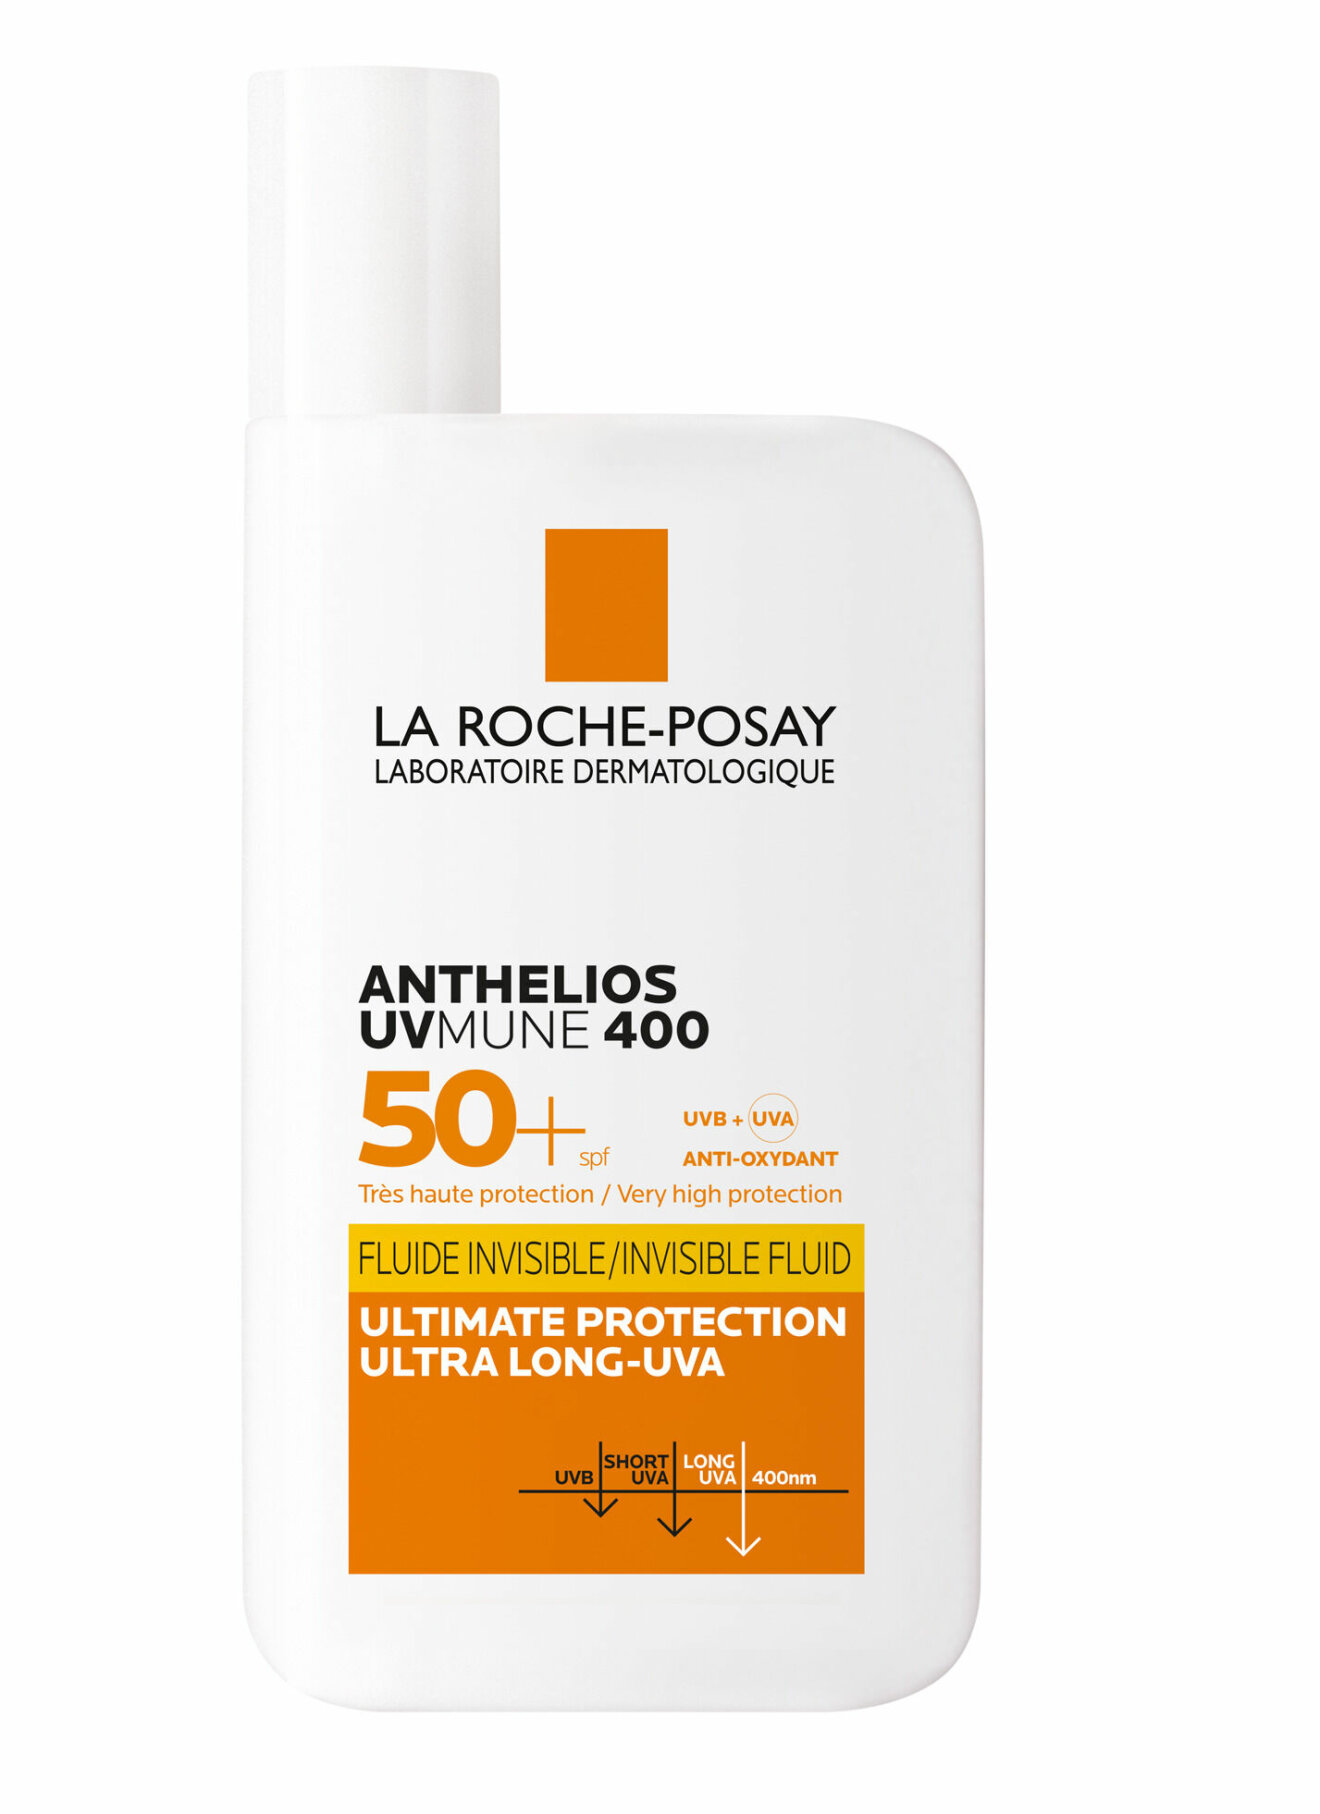 La Roche-Posay Anthelios UVMUNE400 SPF50+ högt solskydd för ansiktet